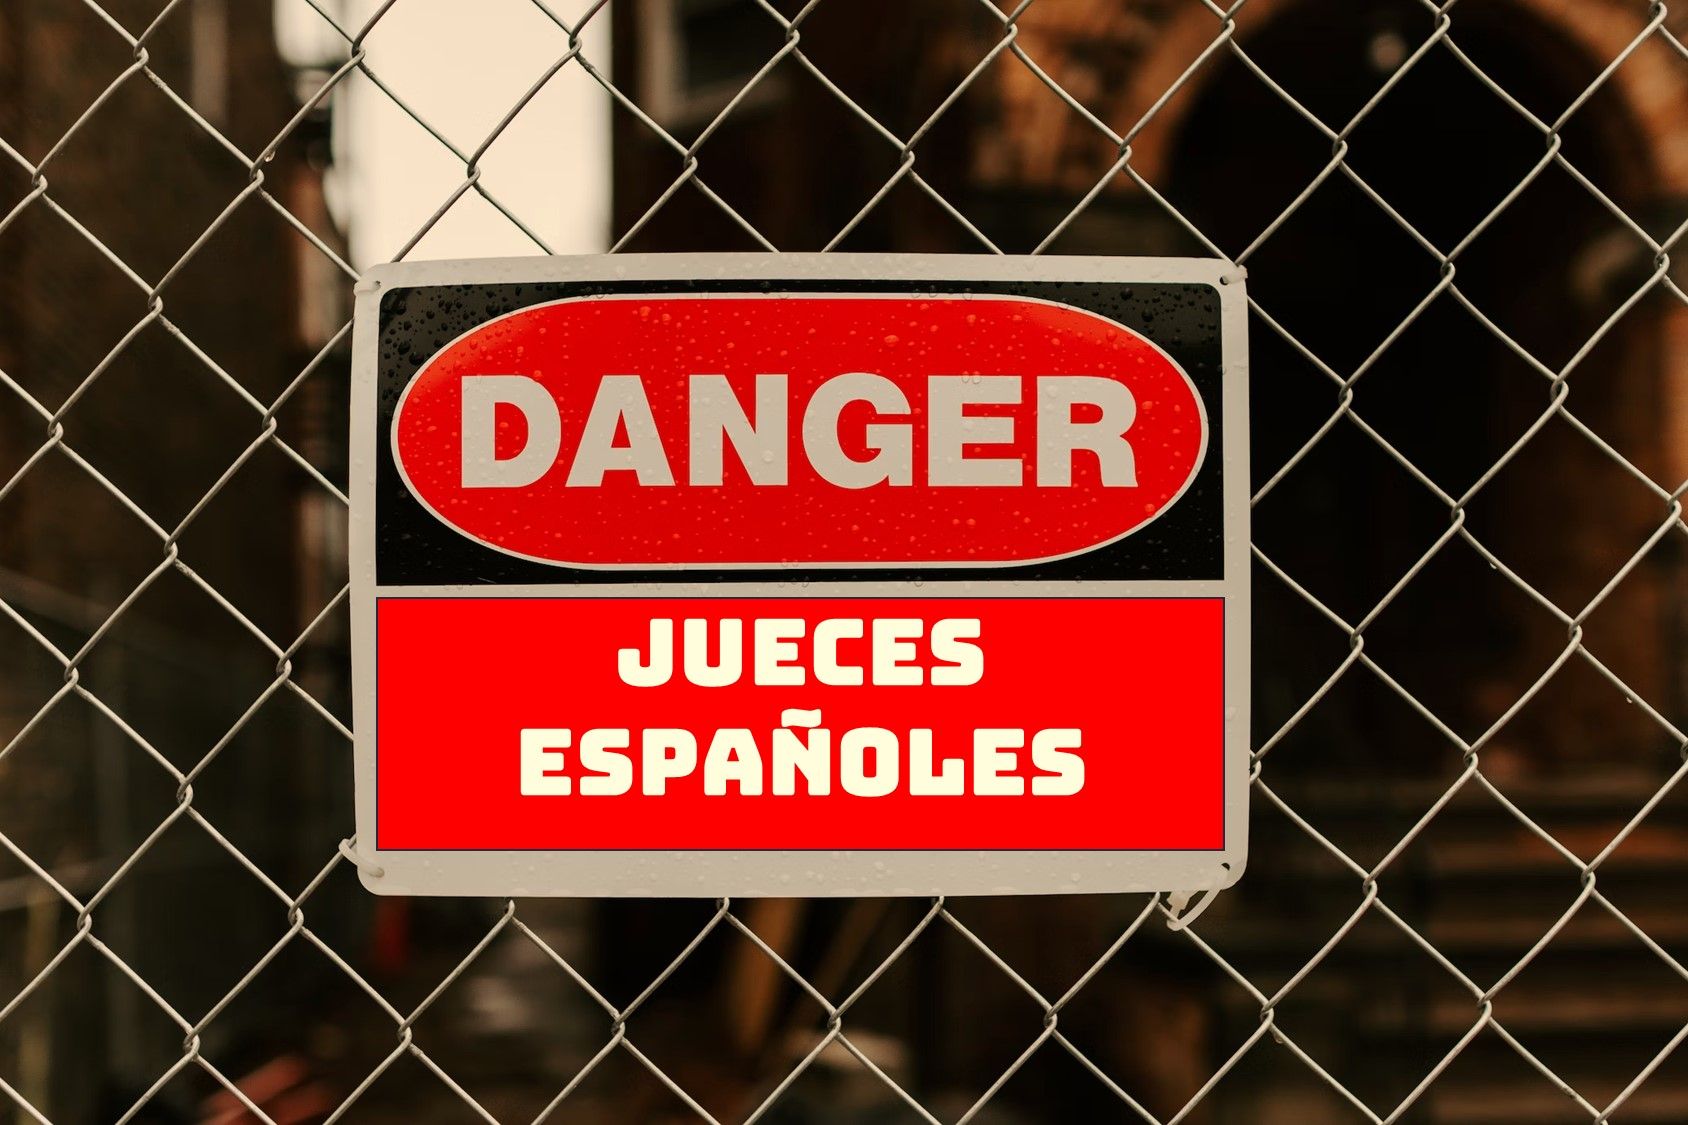 Los jueces españoles cometen, en ocasiones, abuso de prórrogas en las instrucciones